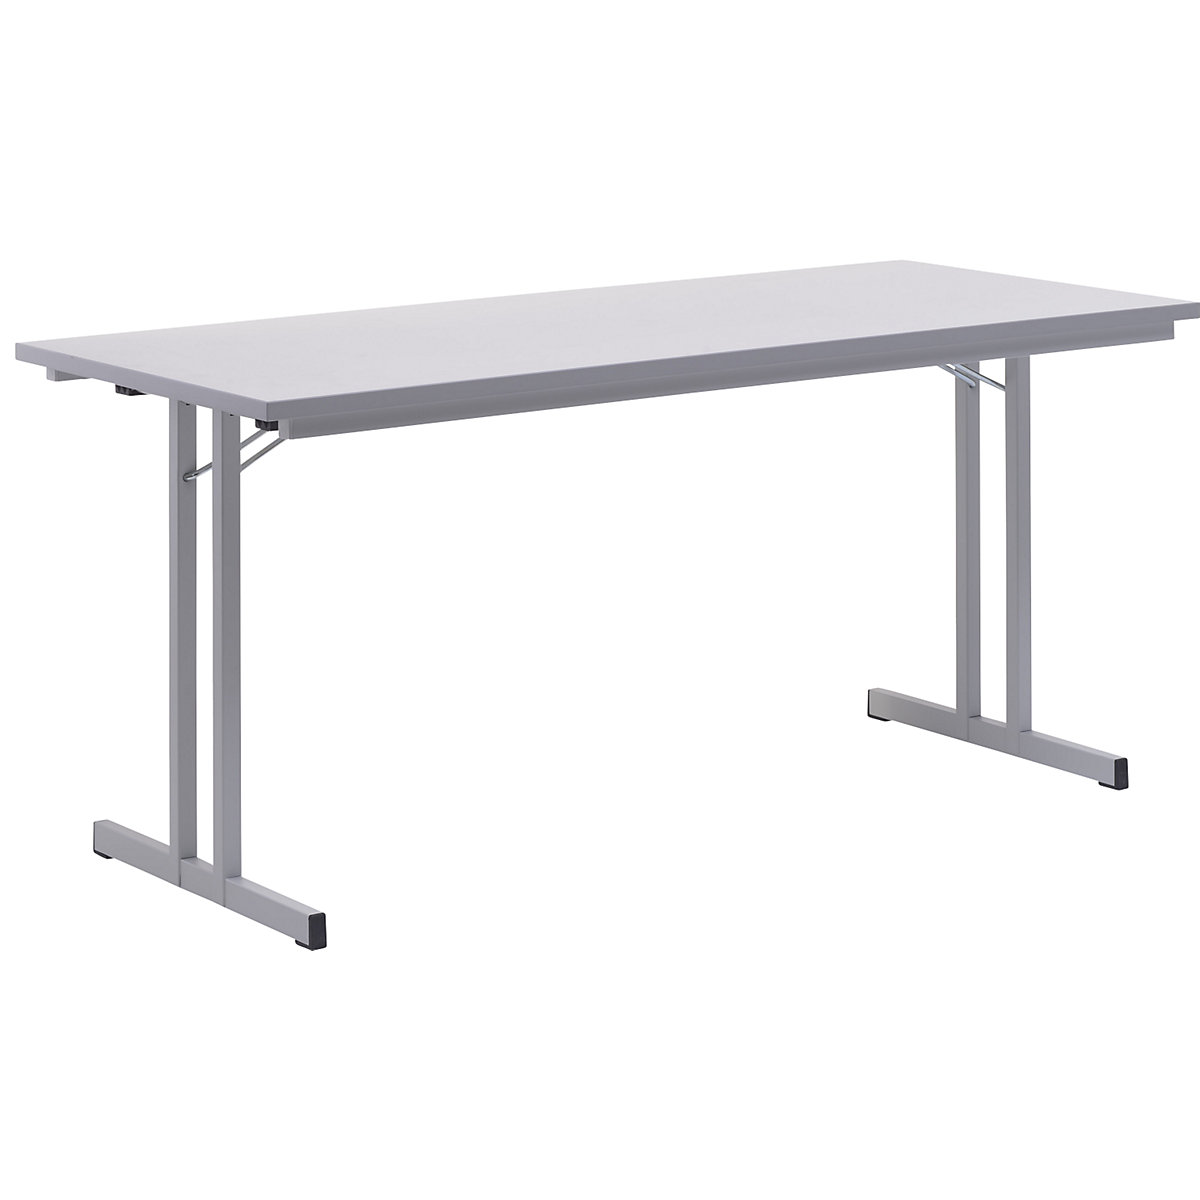 Sklopný stůl, s mimořádně silnou deskou, výška 720 mm, 1600 x 700 mm, podstavec světle šedý, deska světle šedá